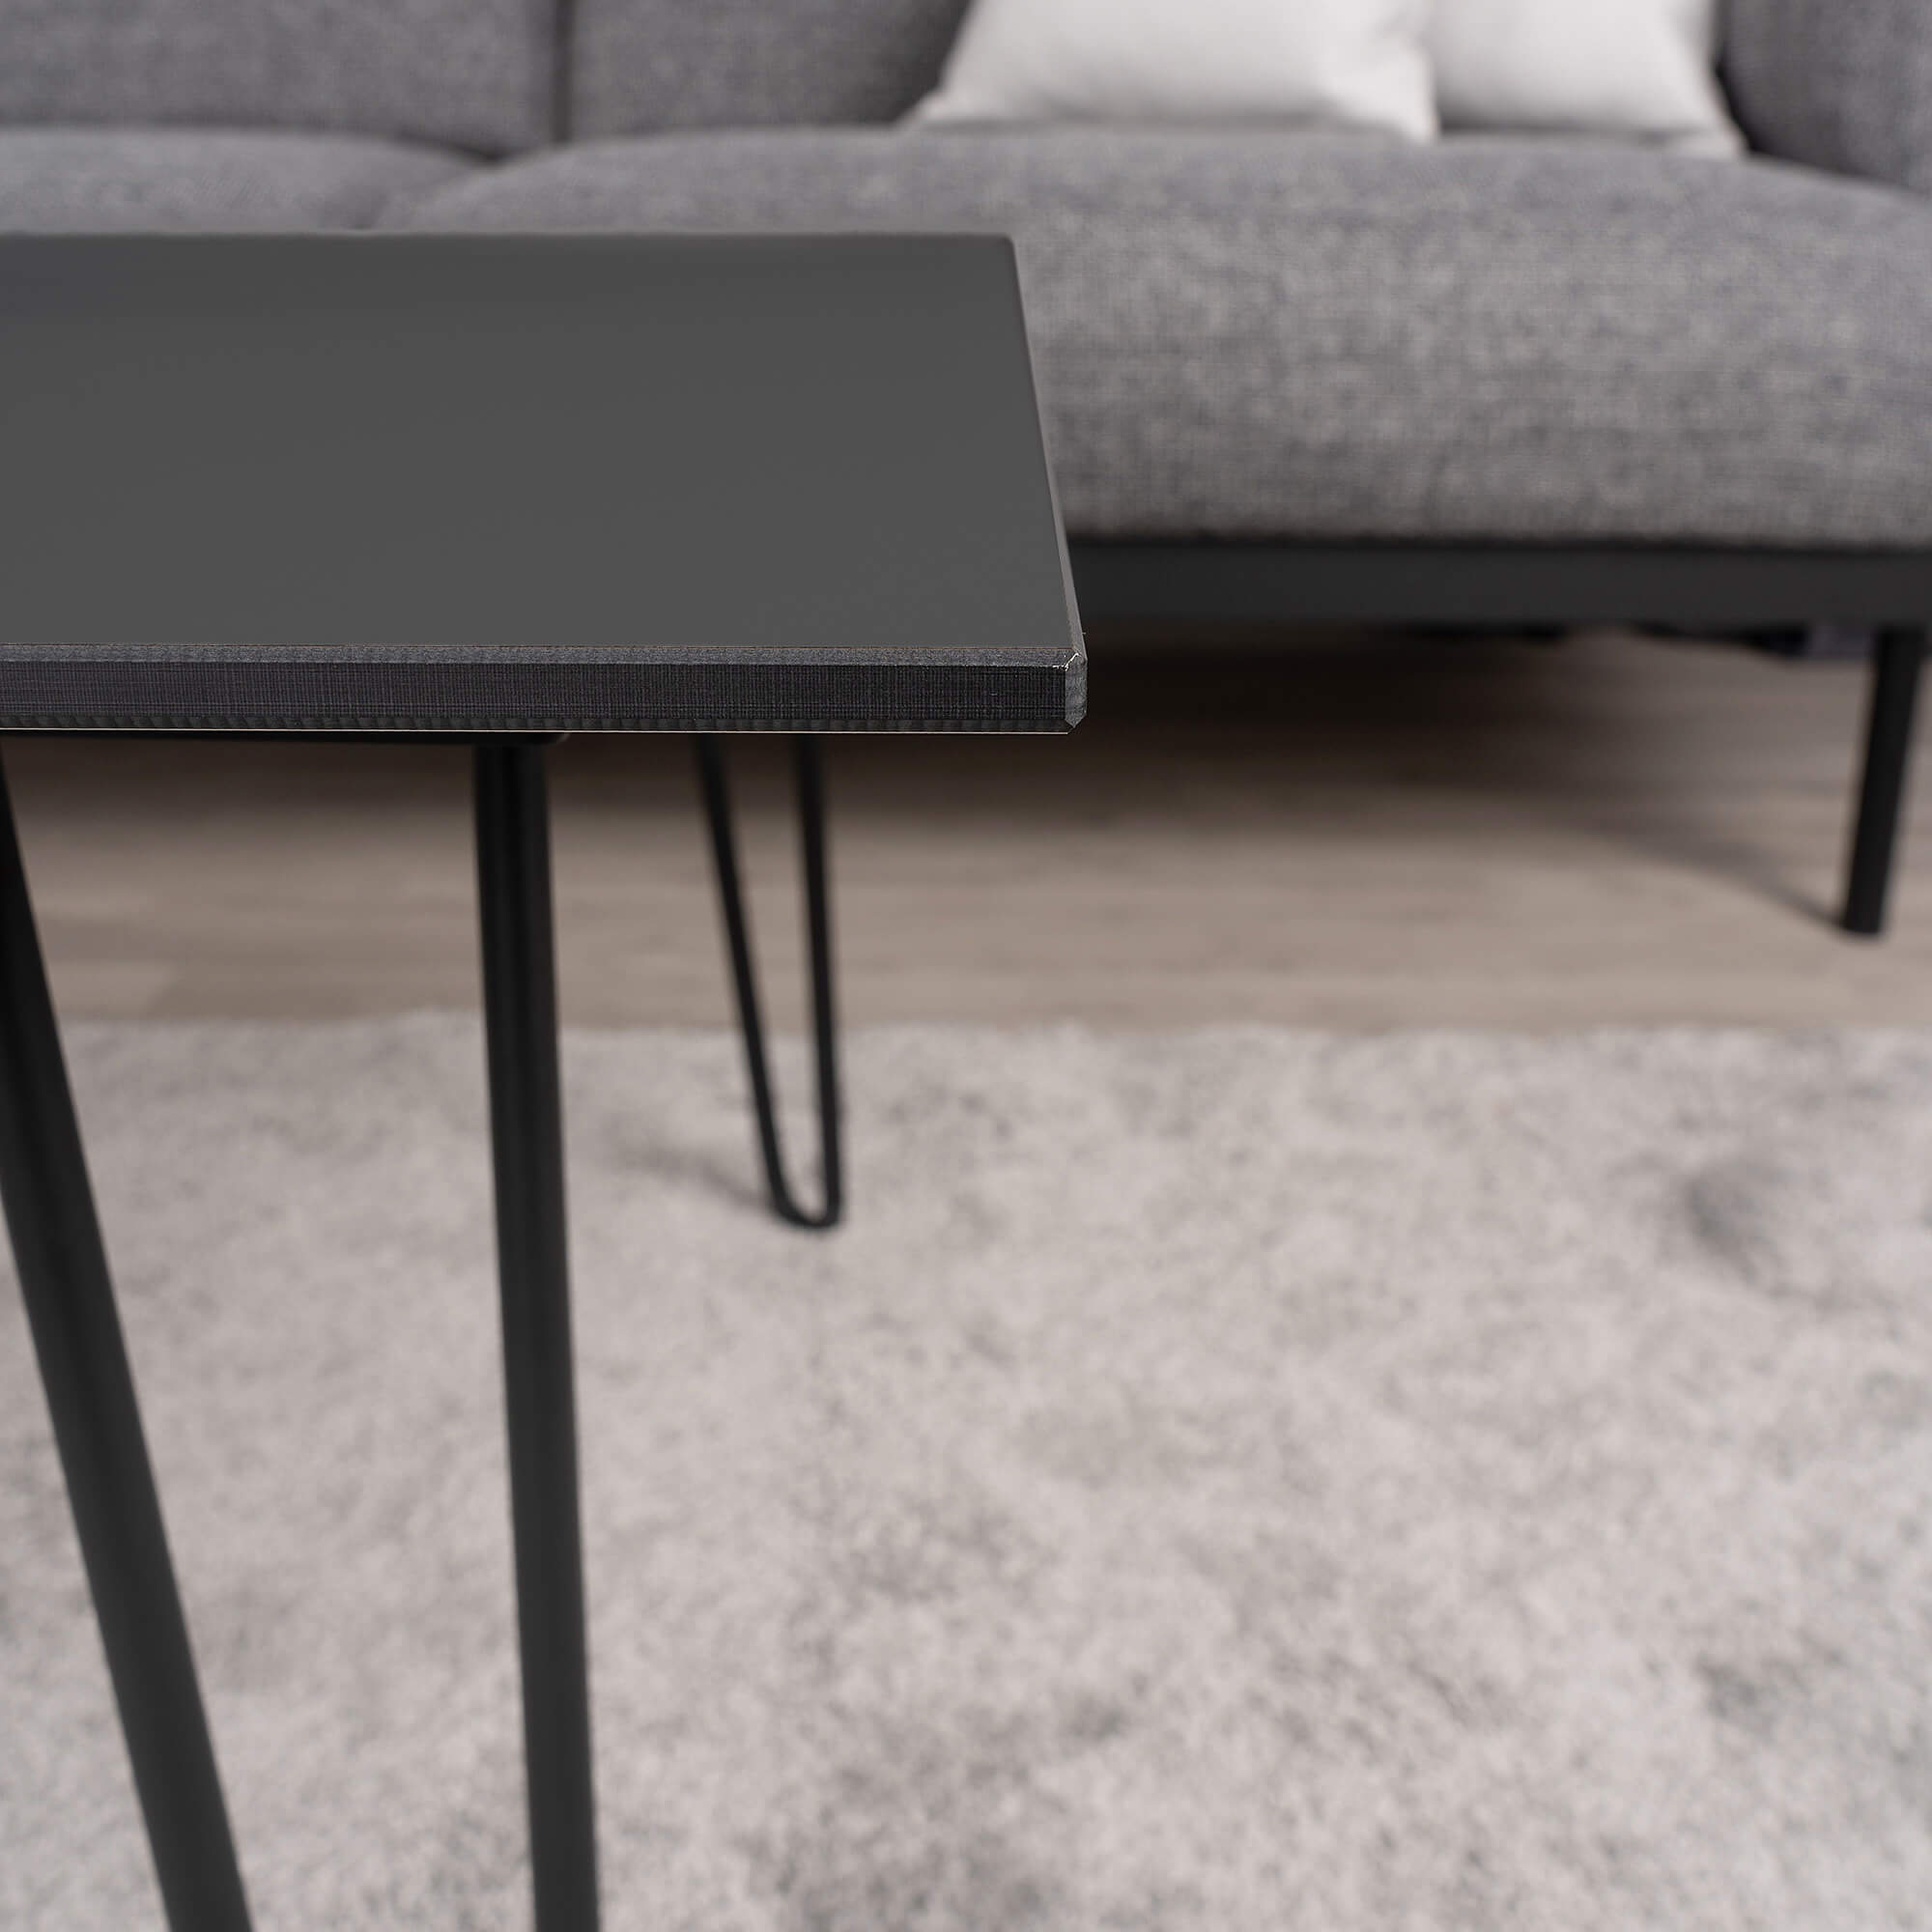 Wafer-thin-living-room-tabletop-dark-grey